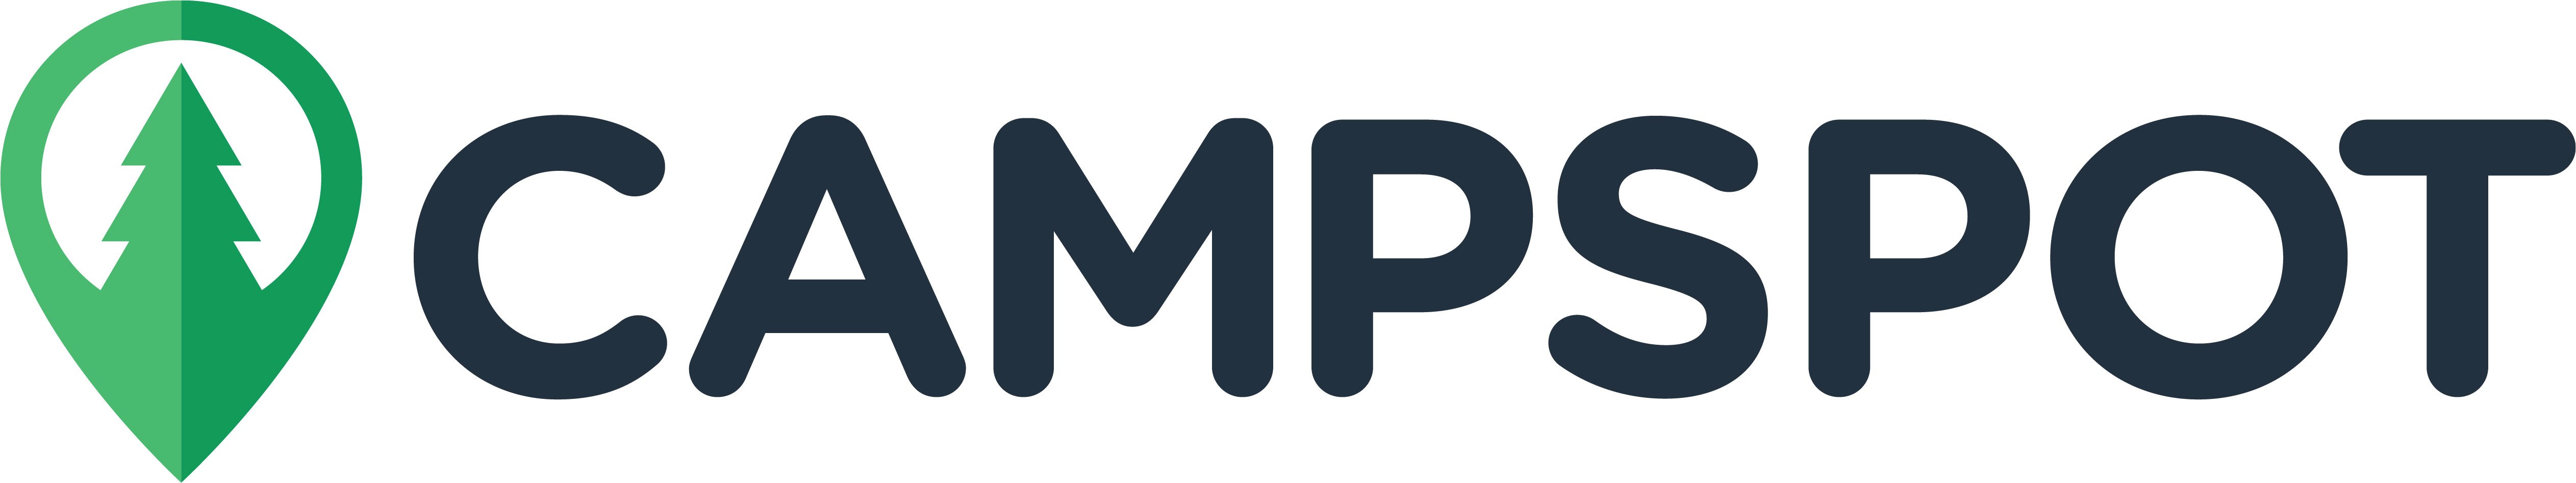 campspot_logo